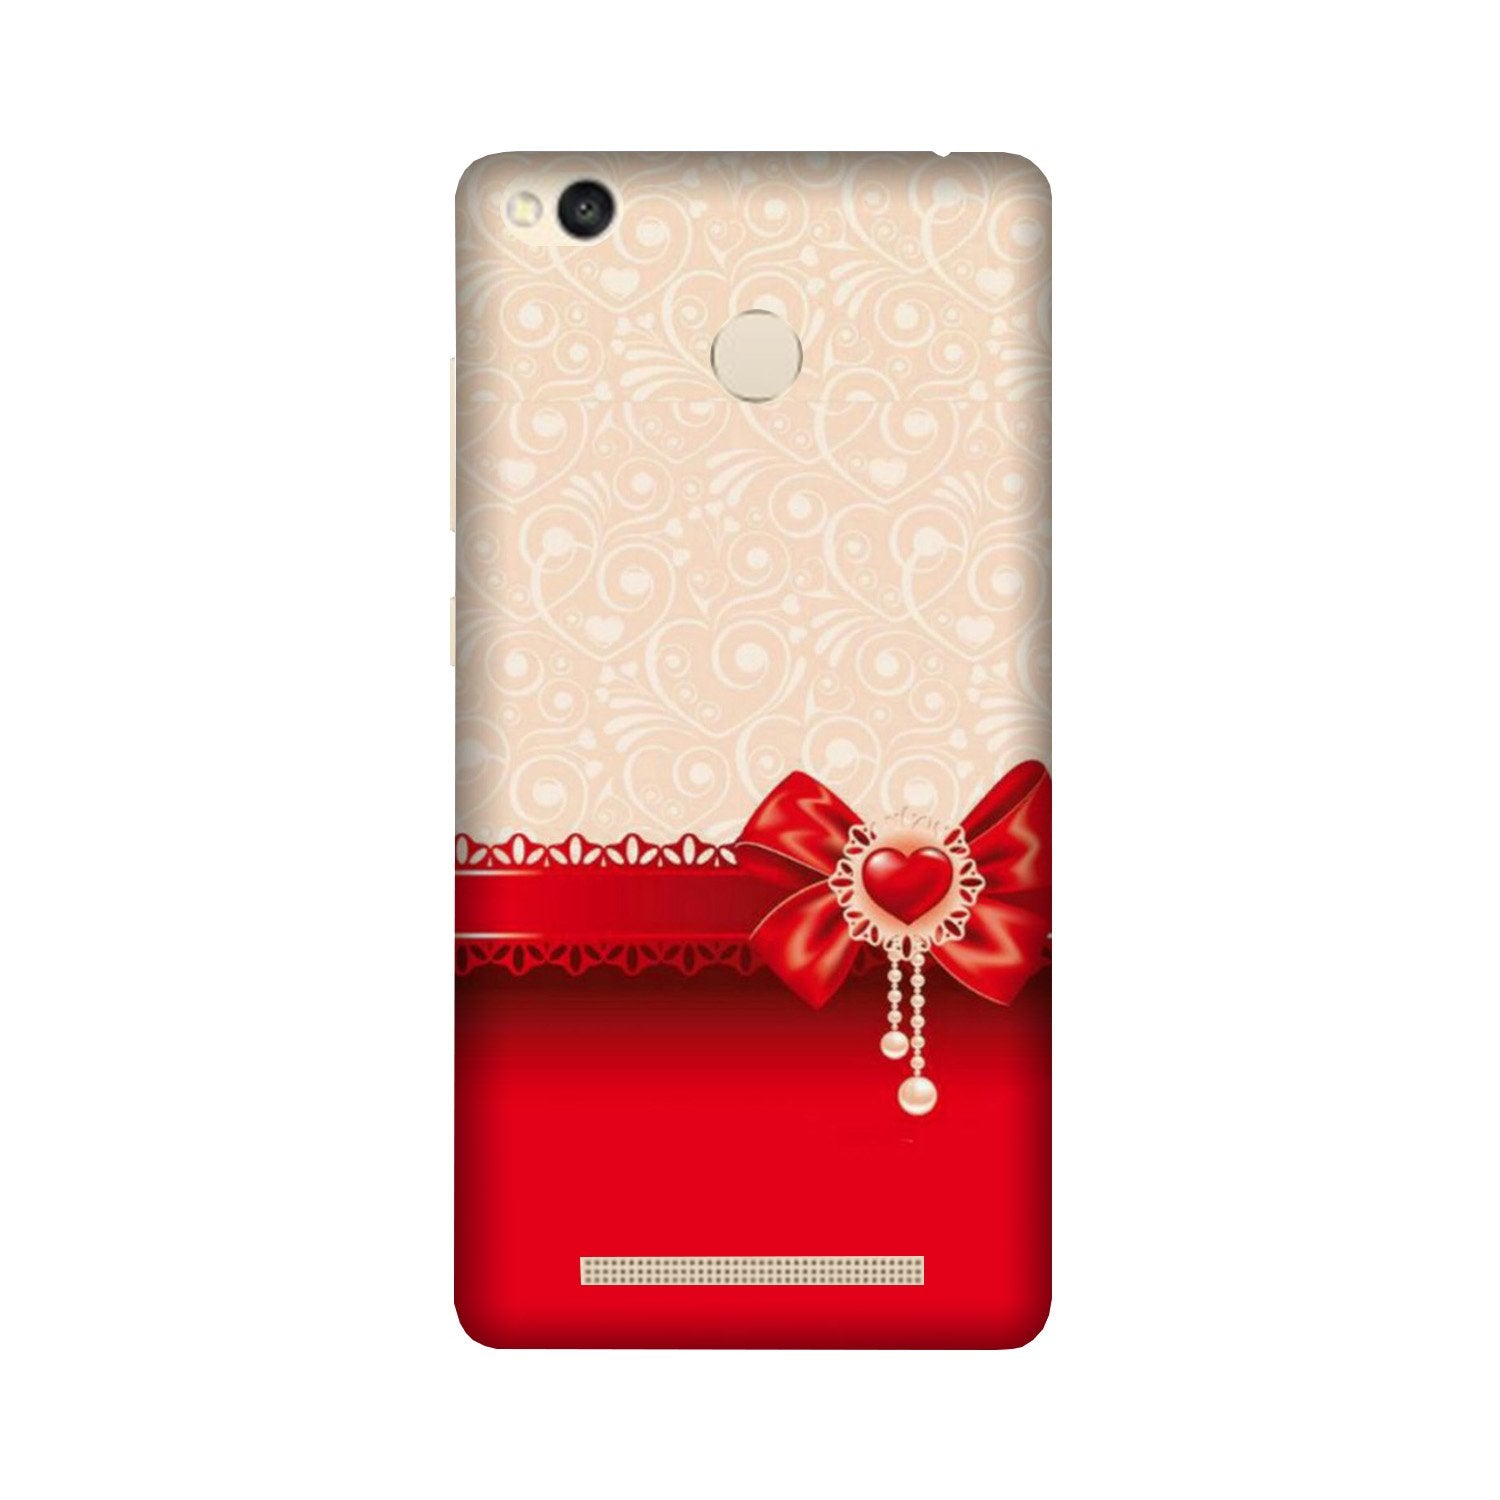 Gift Wrap3 Case for Redmi 3S Prime